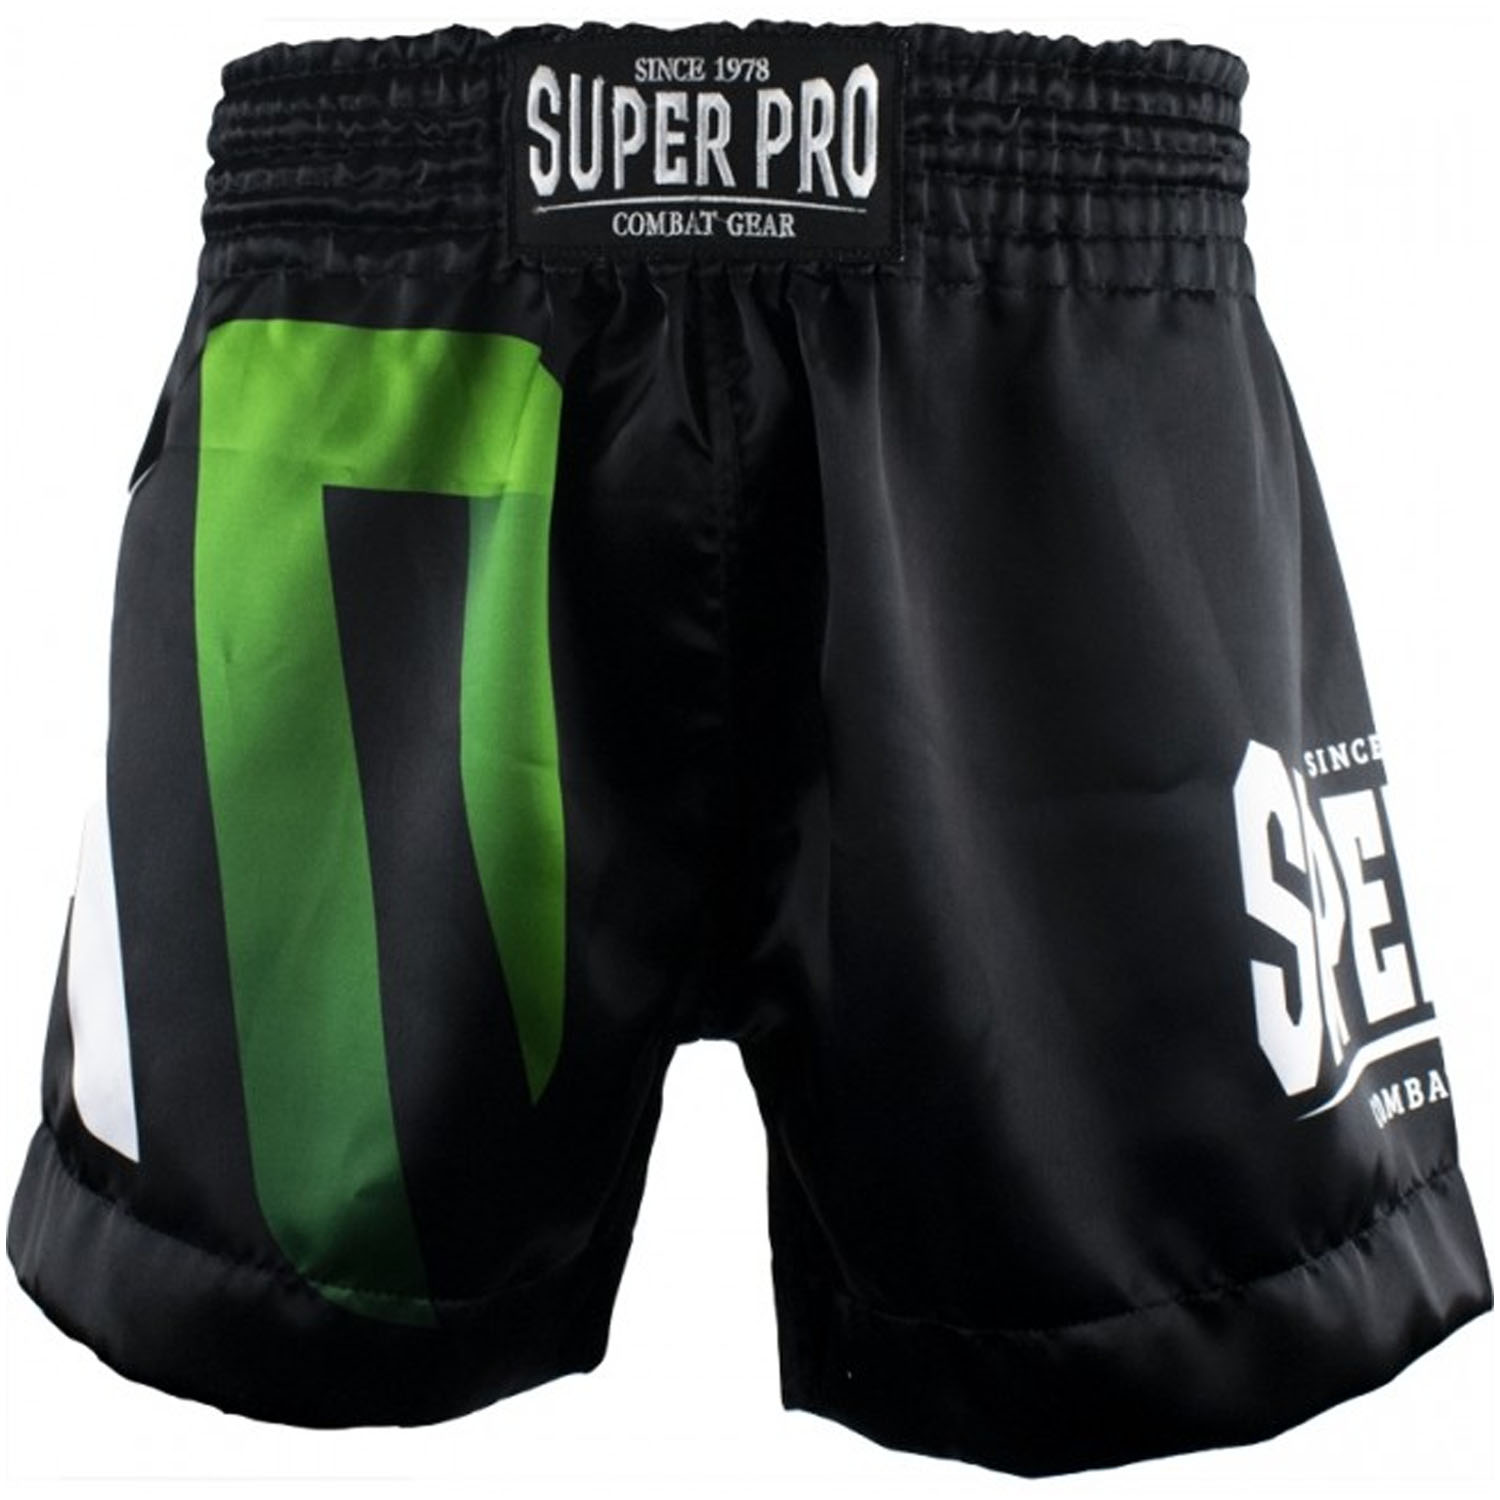 Super Pro Muay Thai Shorts, No Mercy, schwarz